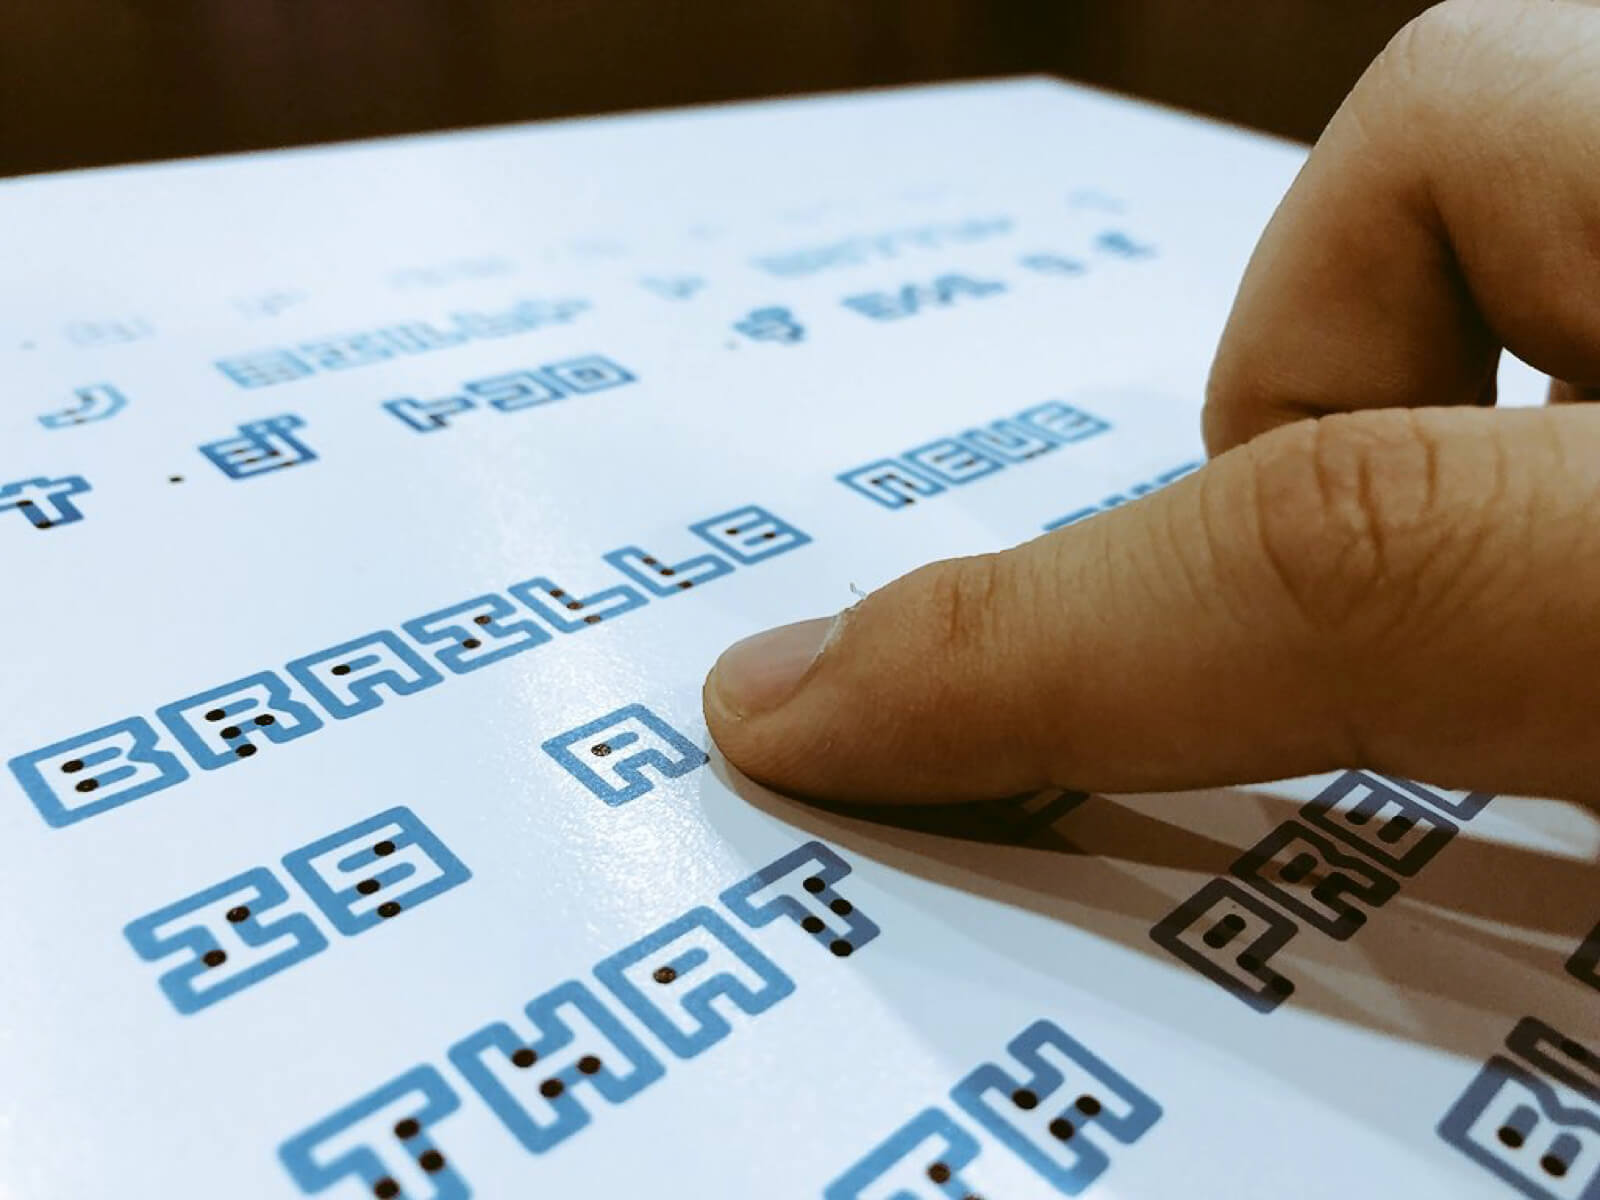 Designer cria fonte que combina a escrita em Braille com a tradicional